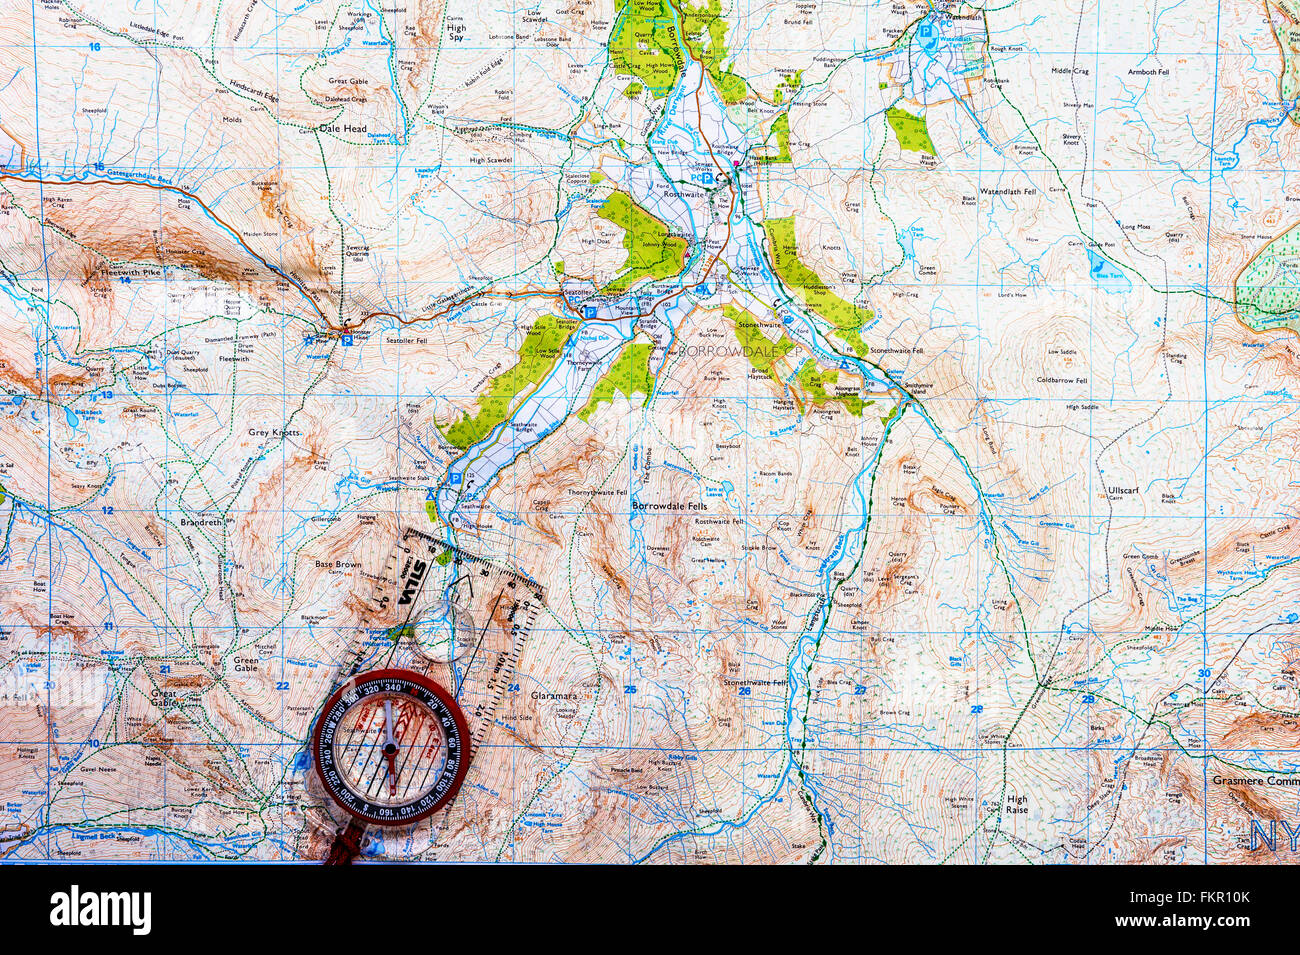 Planen einer Route mit Ordnance Survey Karte und Kompass. Stockfoto